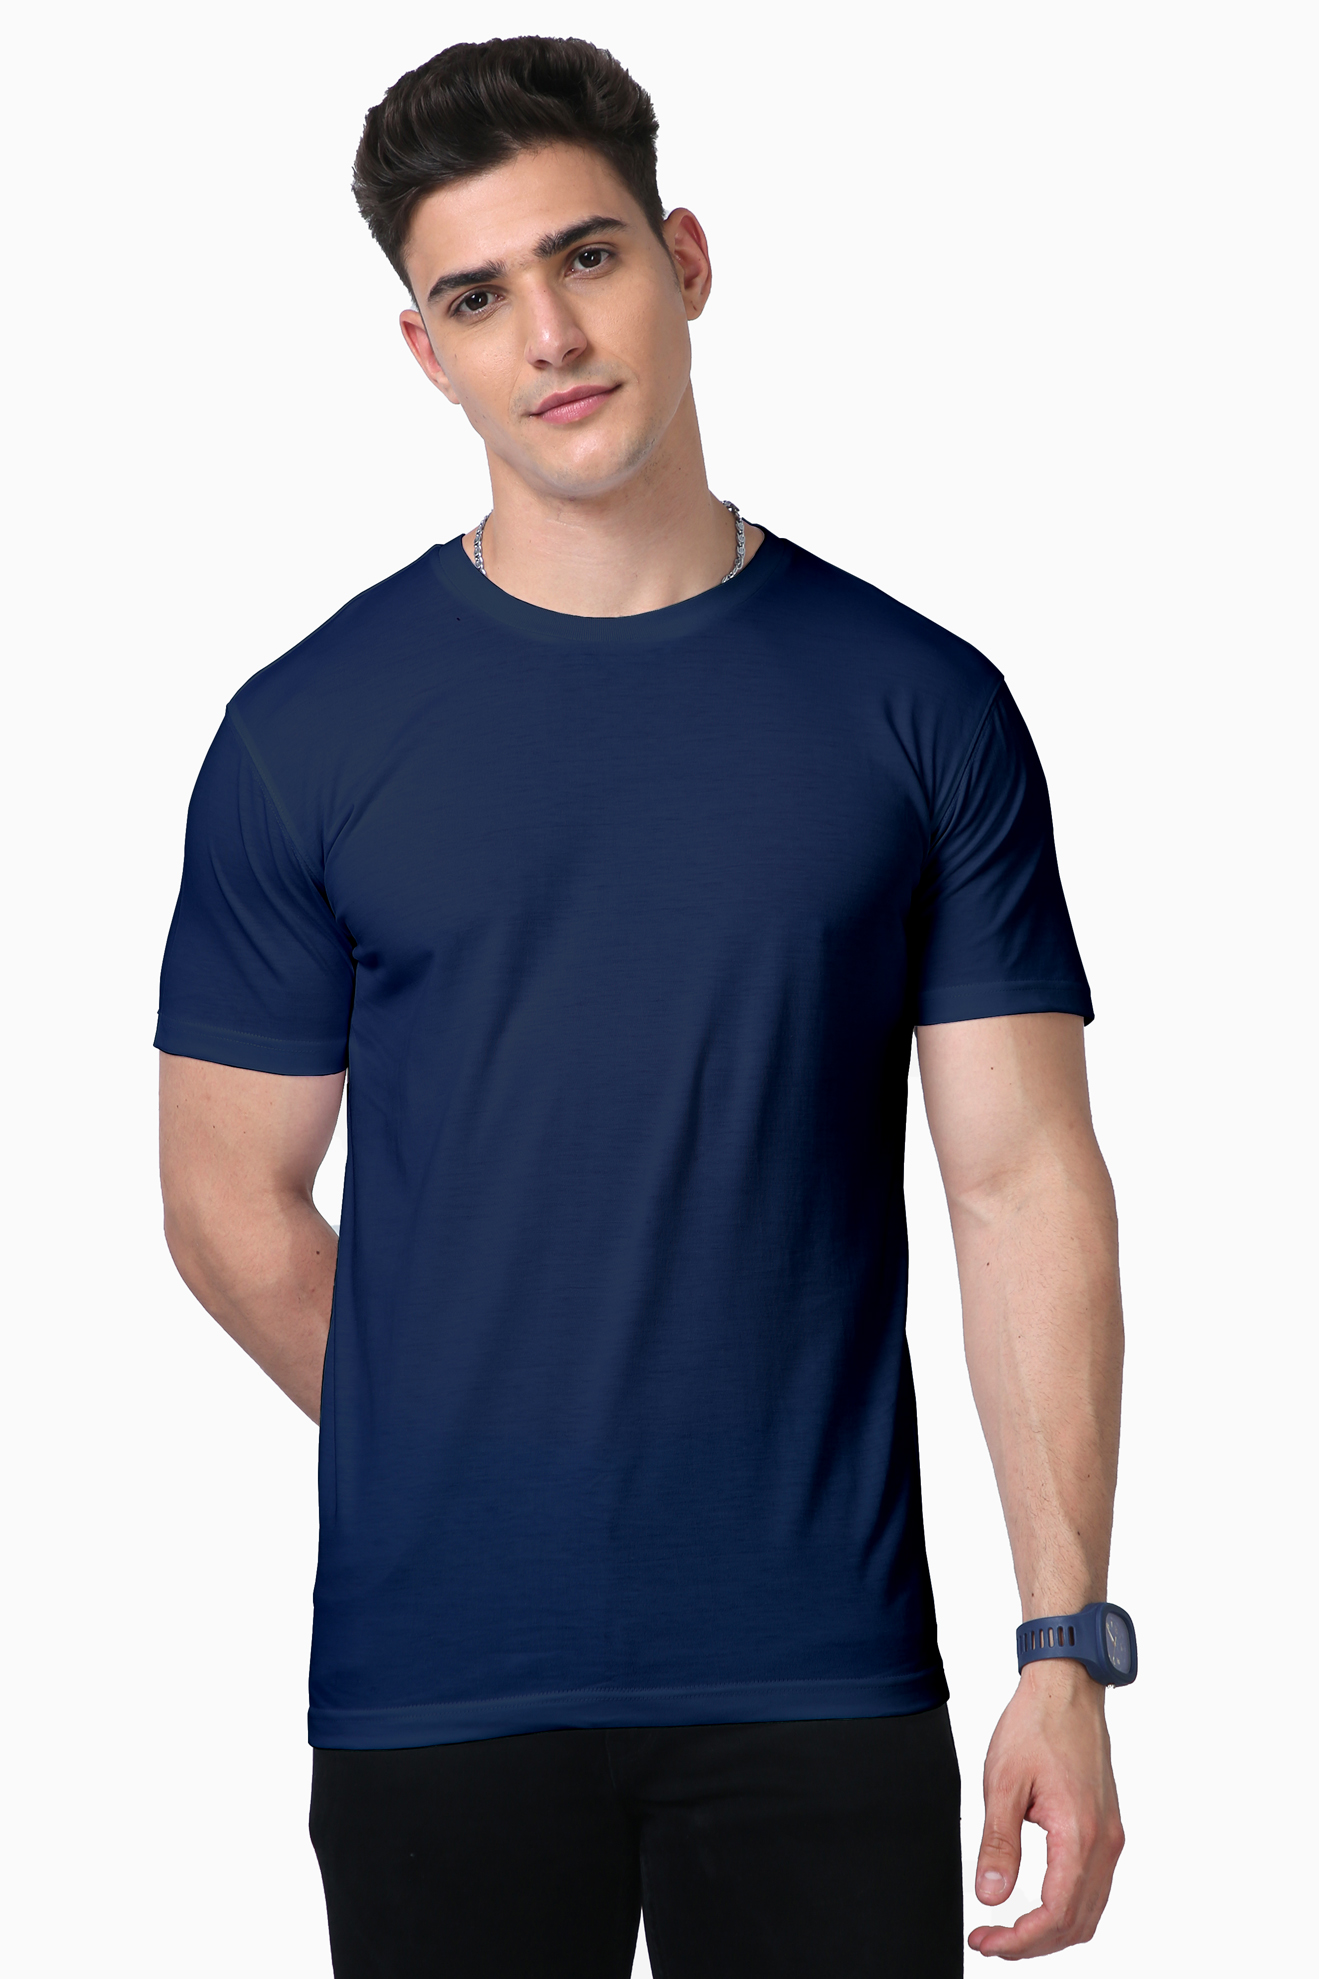 Premium Unisex Supima Cotton T-shirt